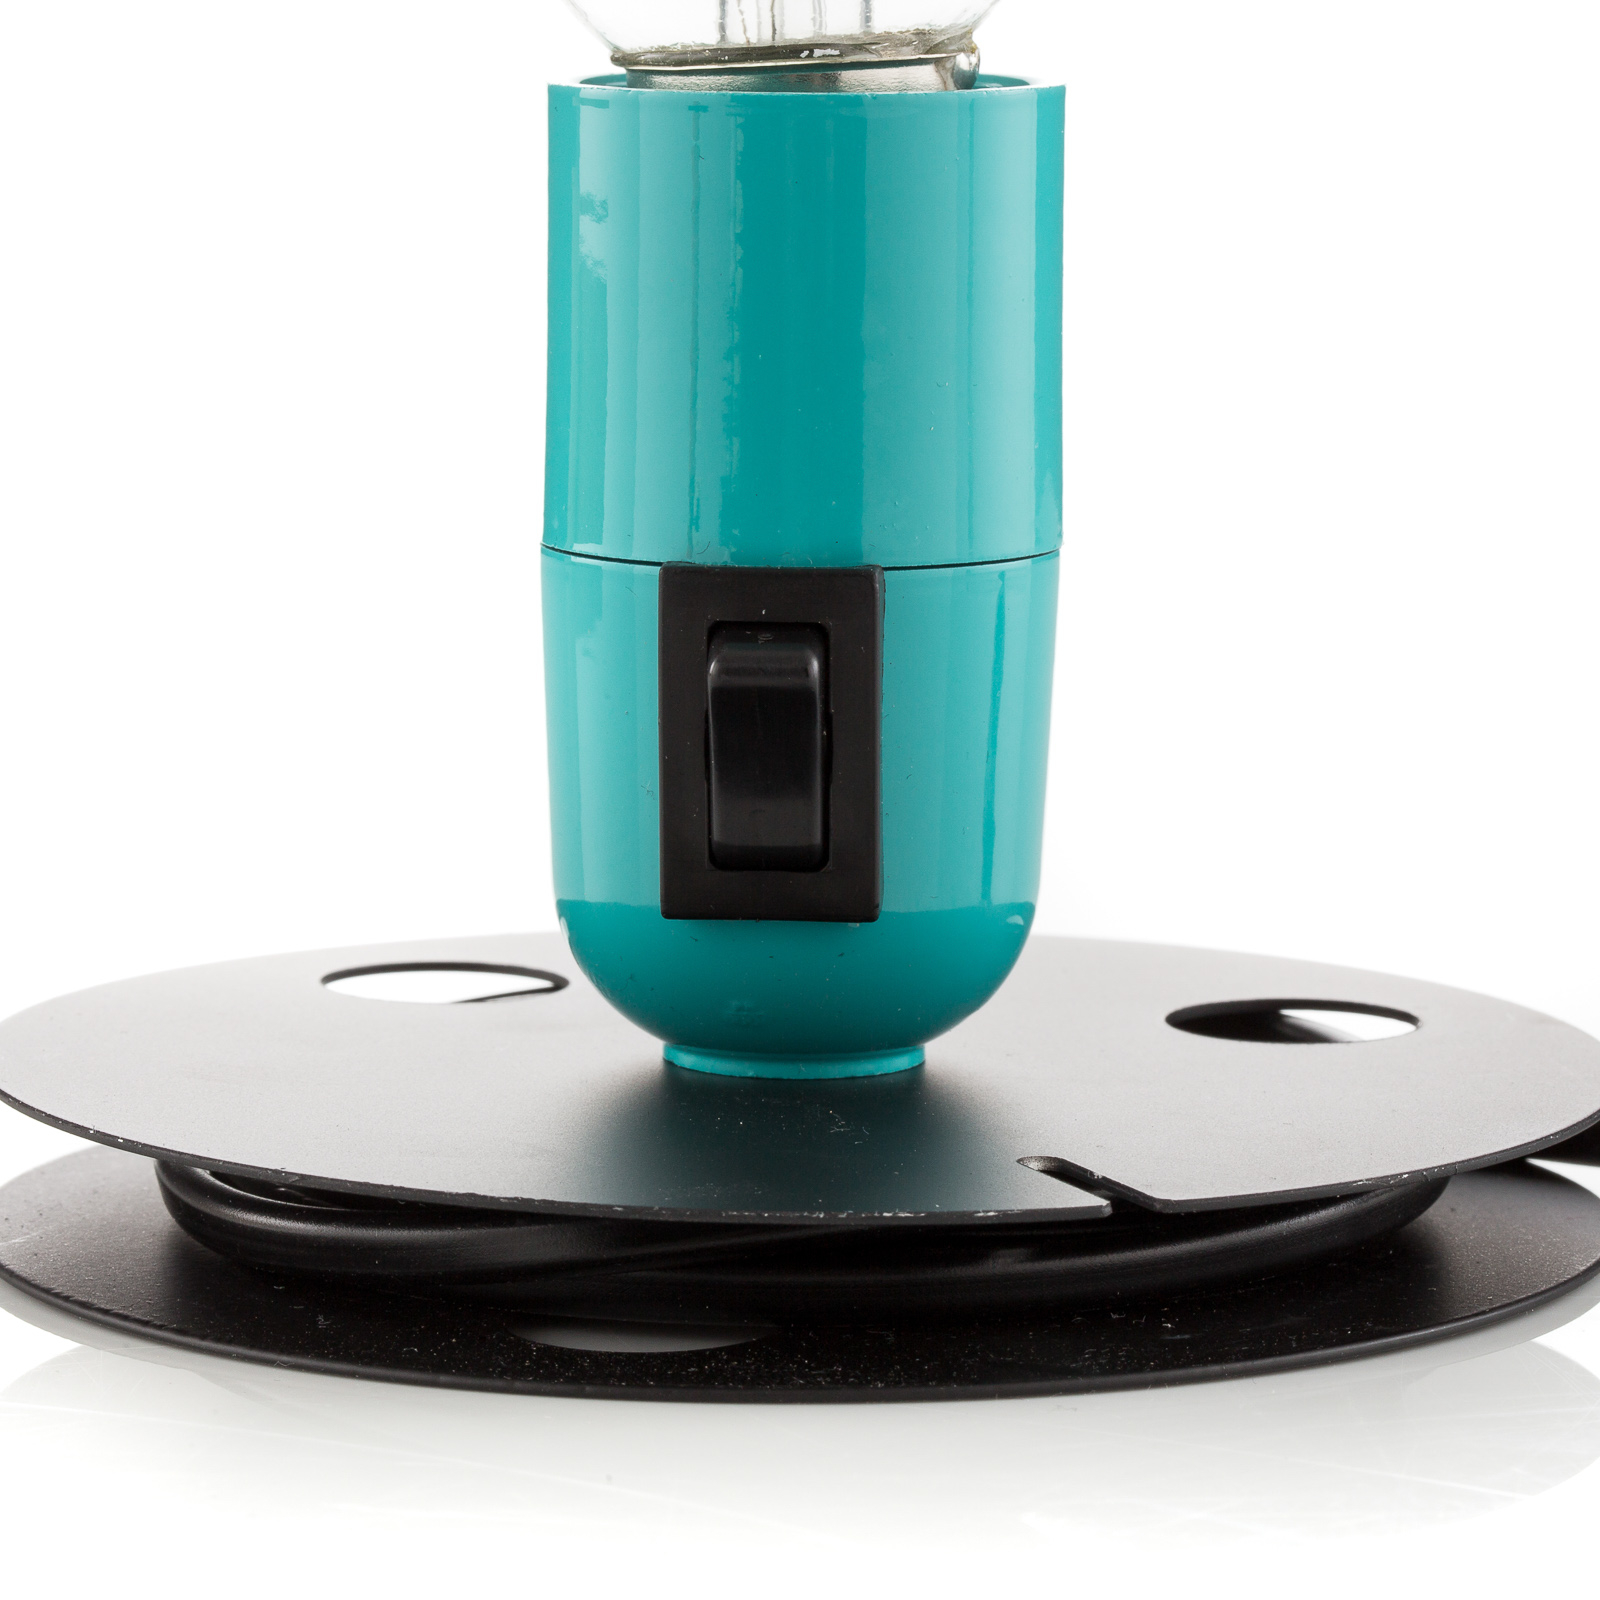 FLOS Lampadina LED table lamp turquoise black base